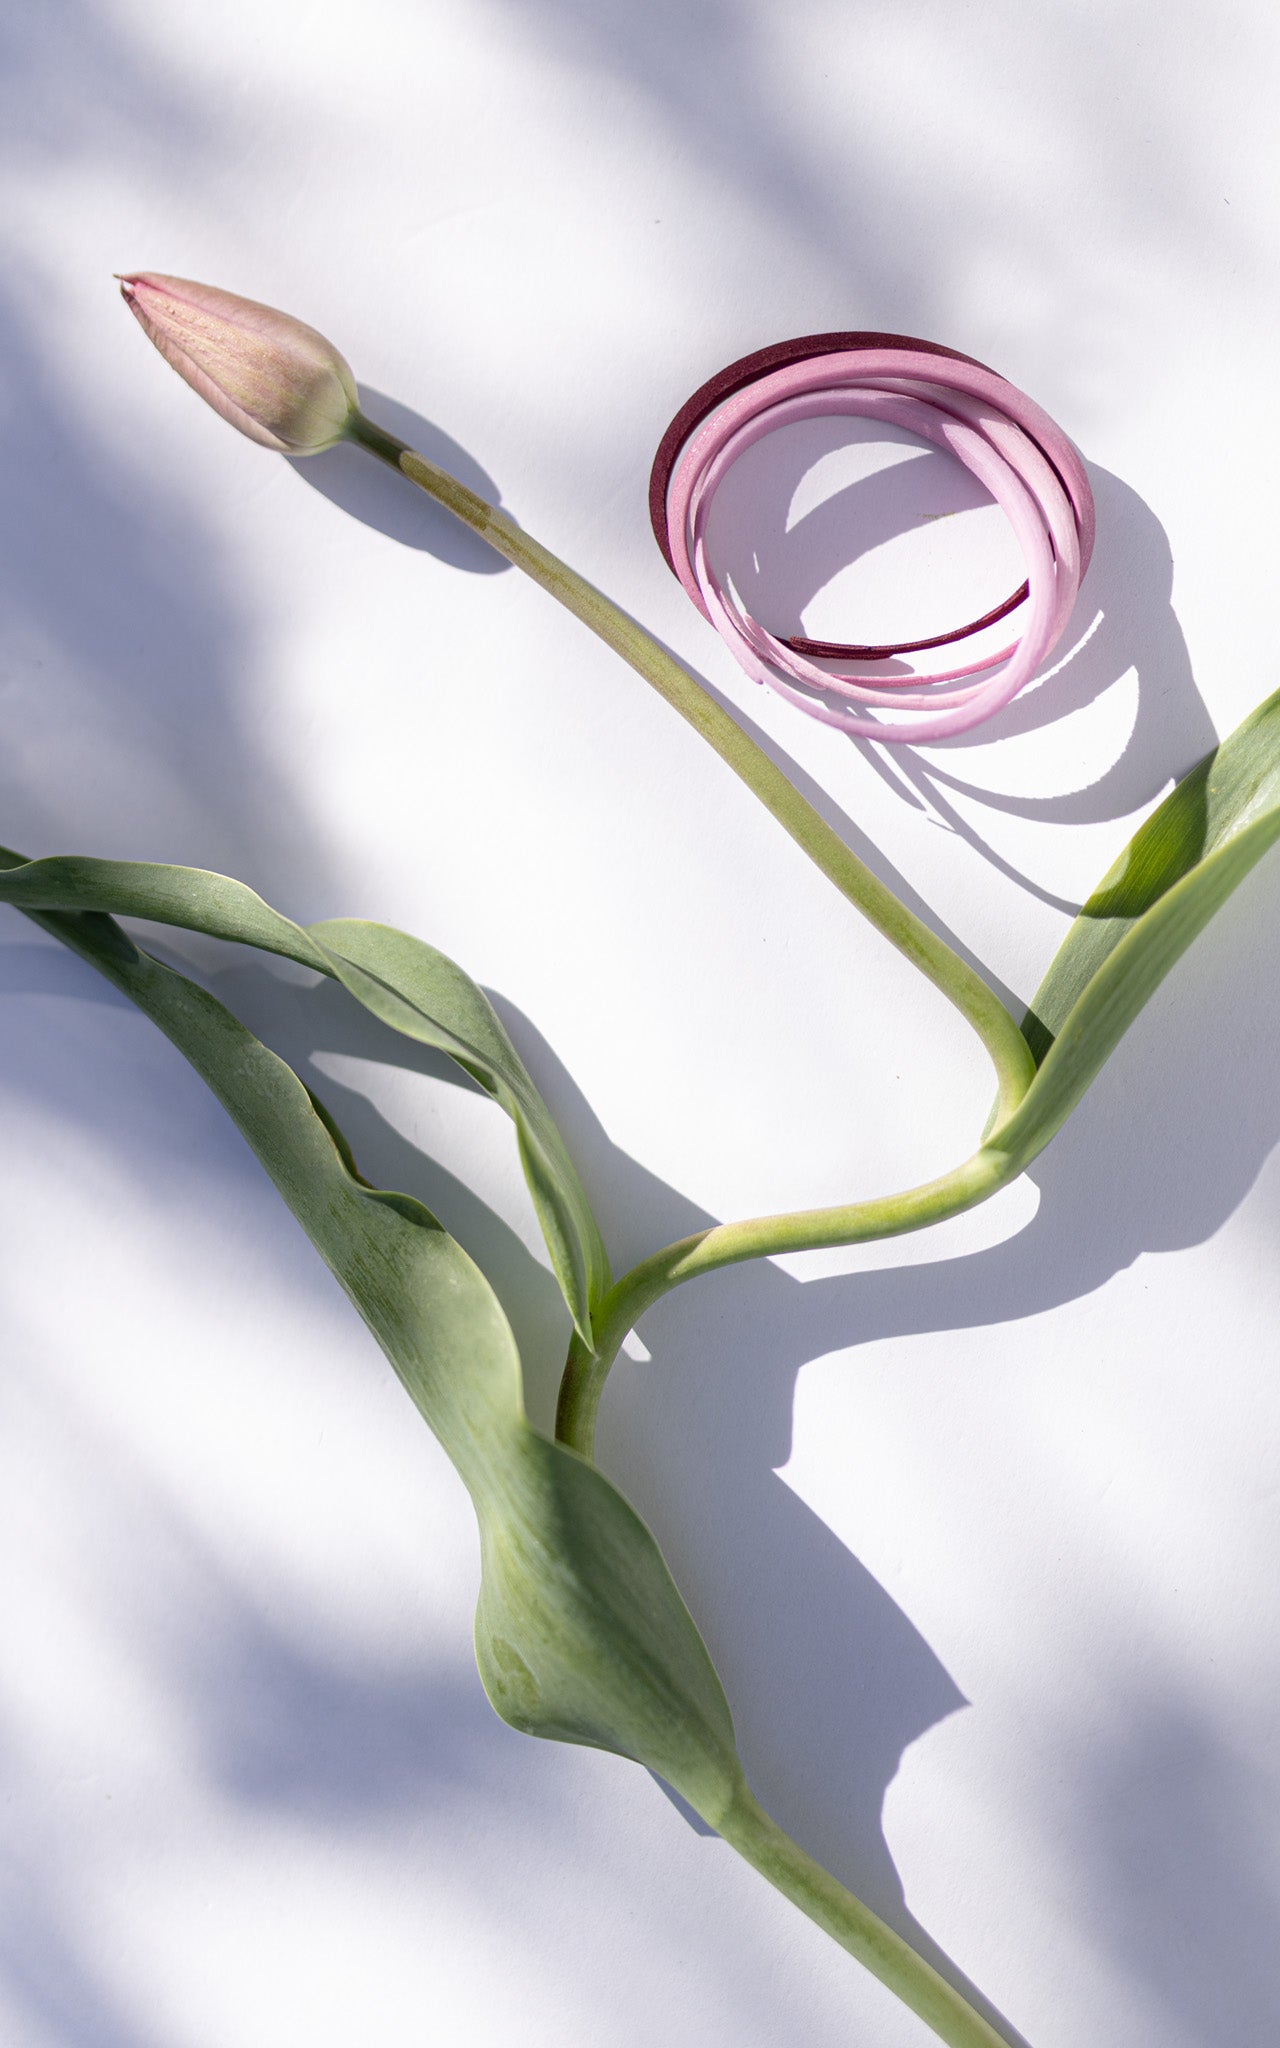 Groupe de Bracelets contemporains minimalistes coloris dégradés lavande, rose, aubergine.